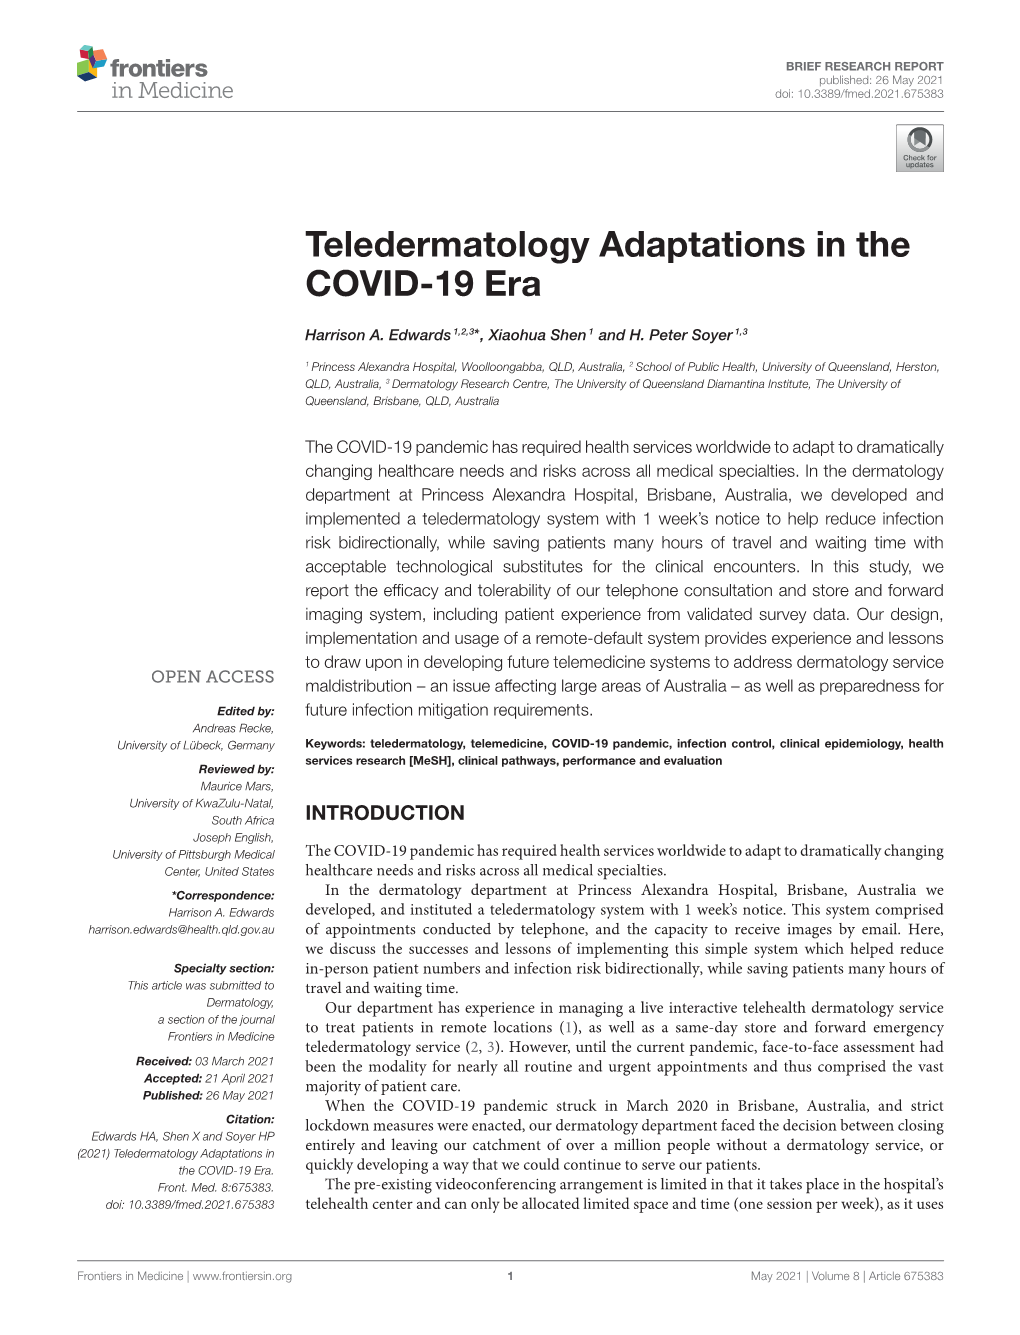 Teledermatology Adaptations in the COVID-19 Era